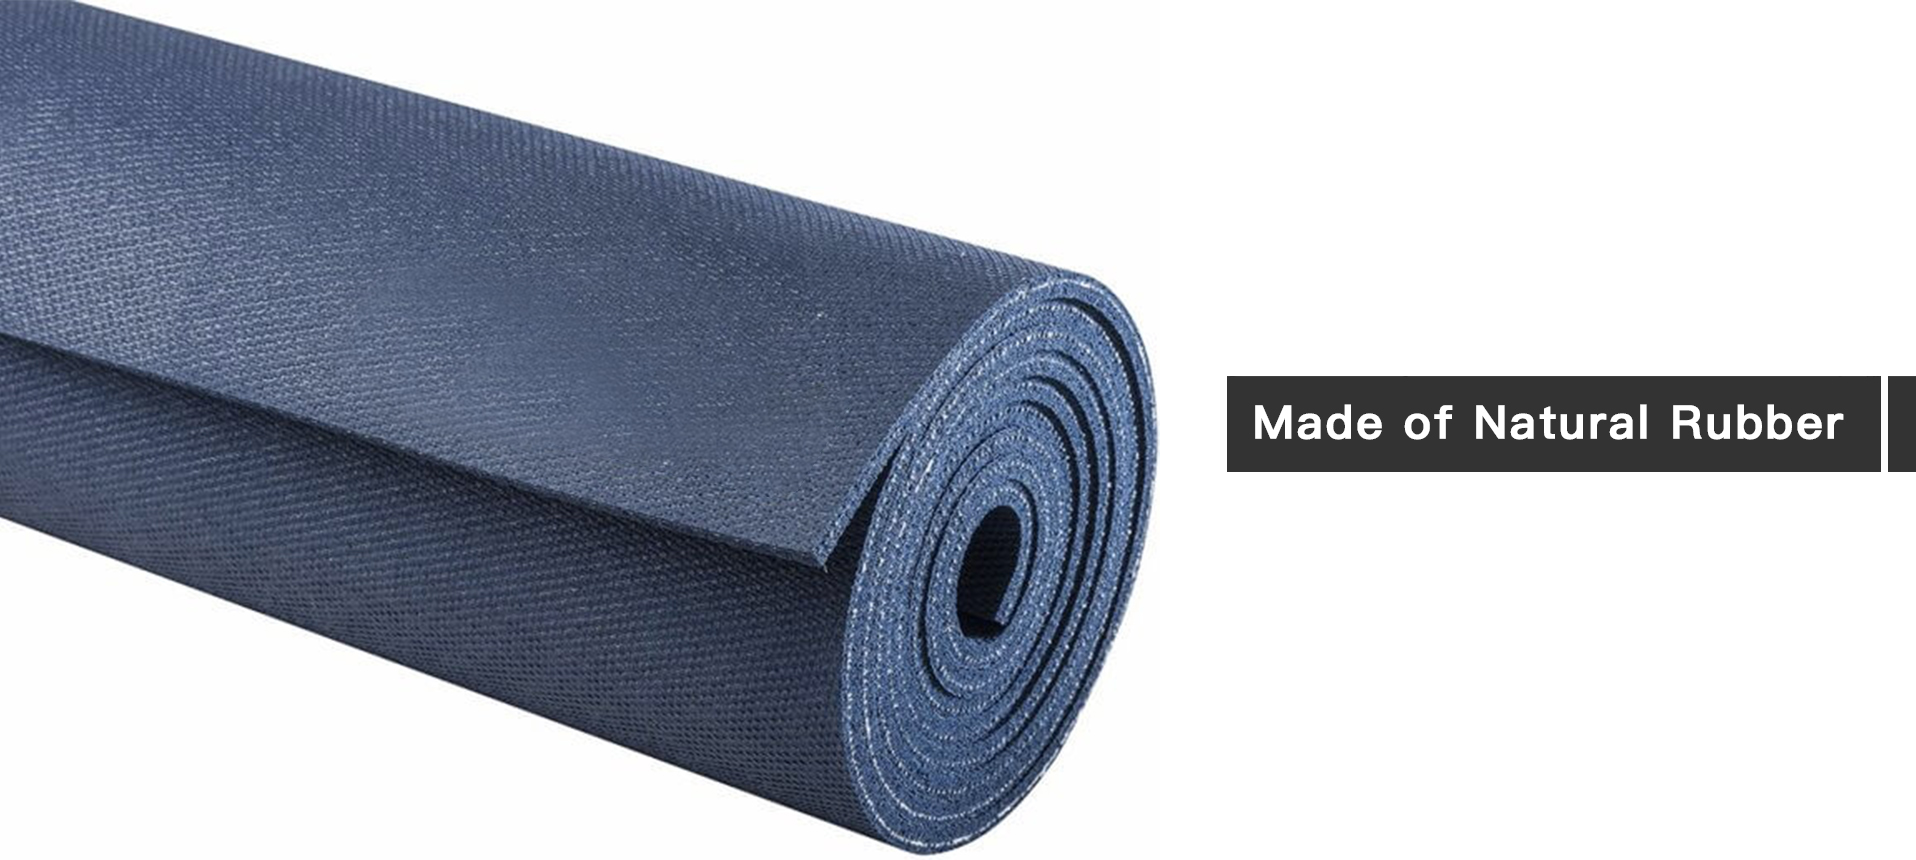 Natural Rubber yoga mat